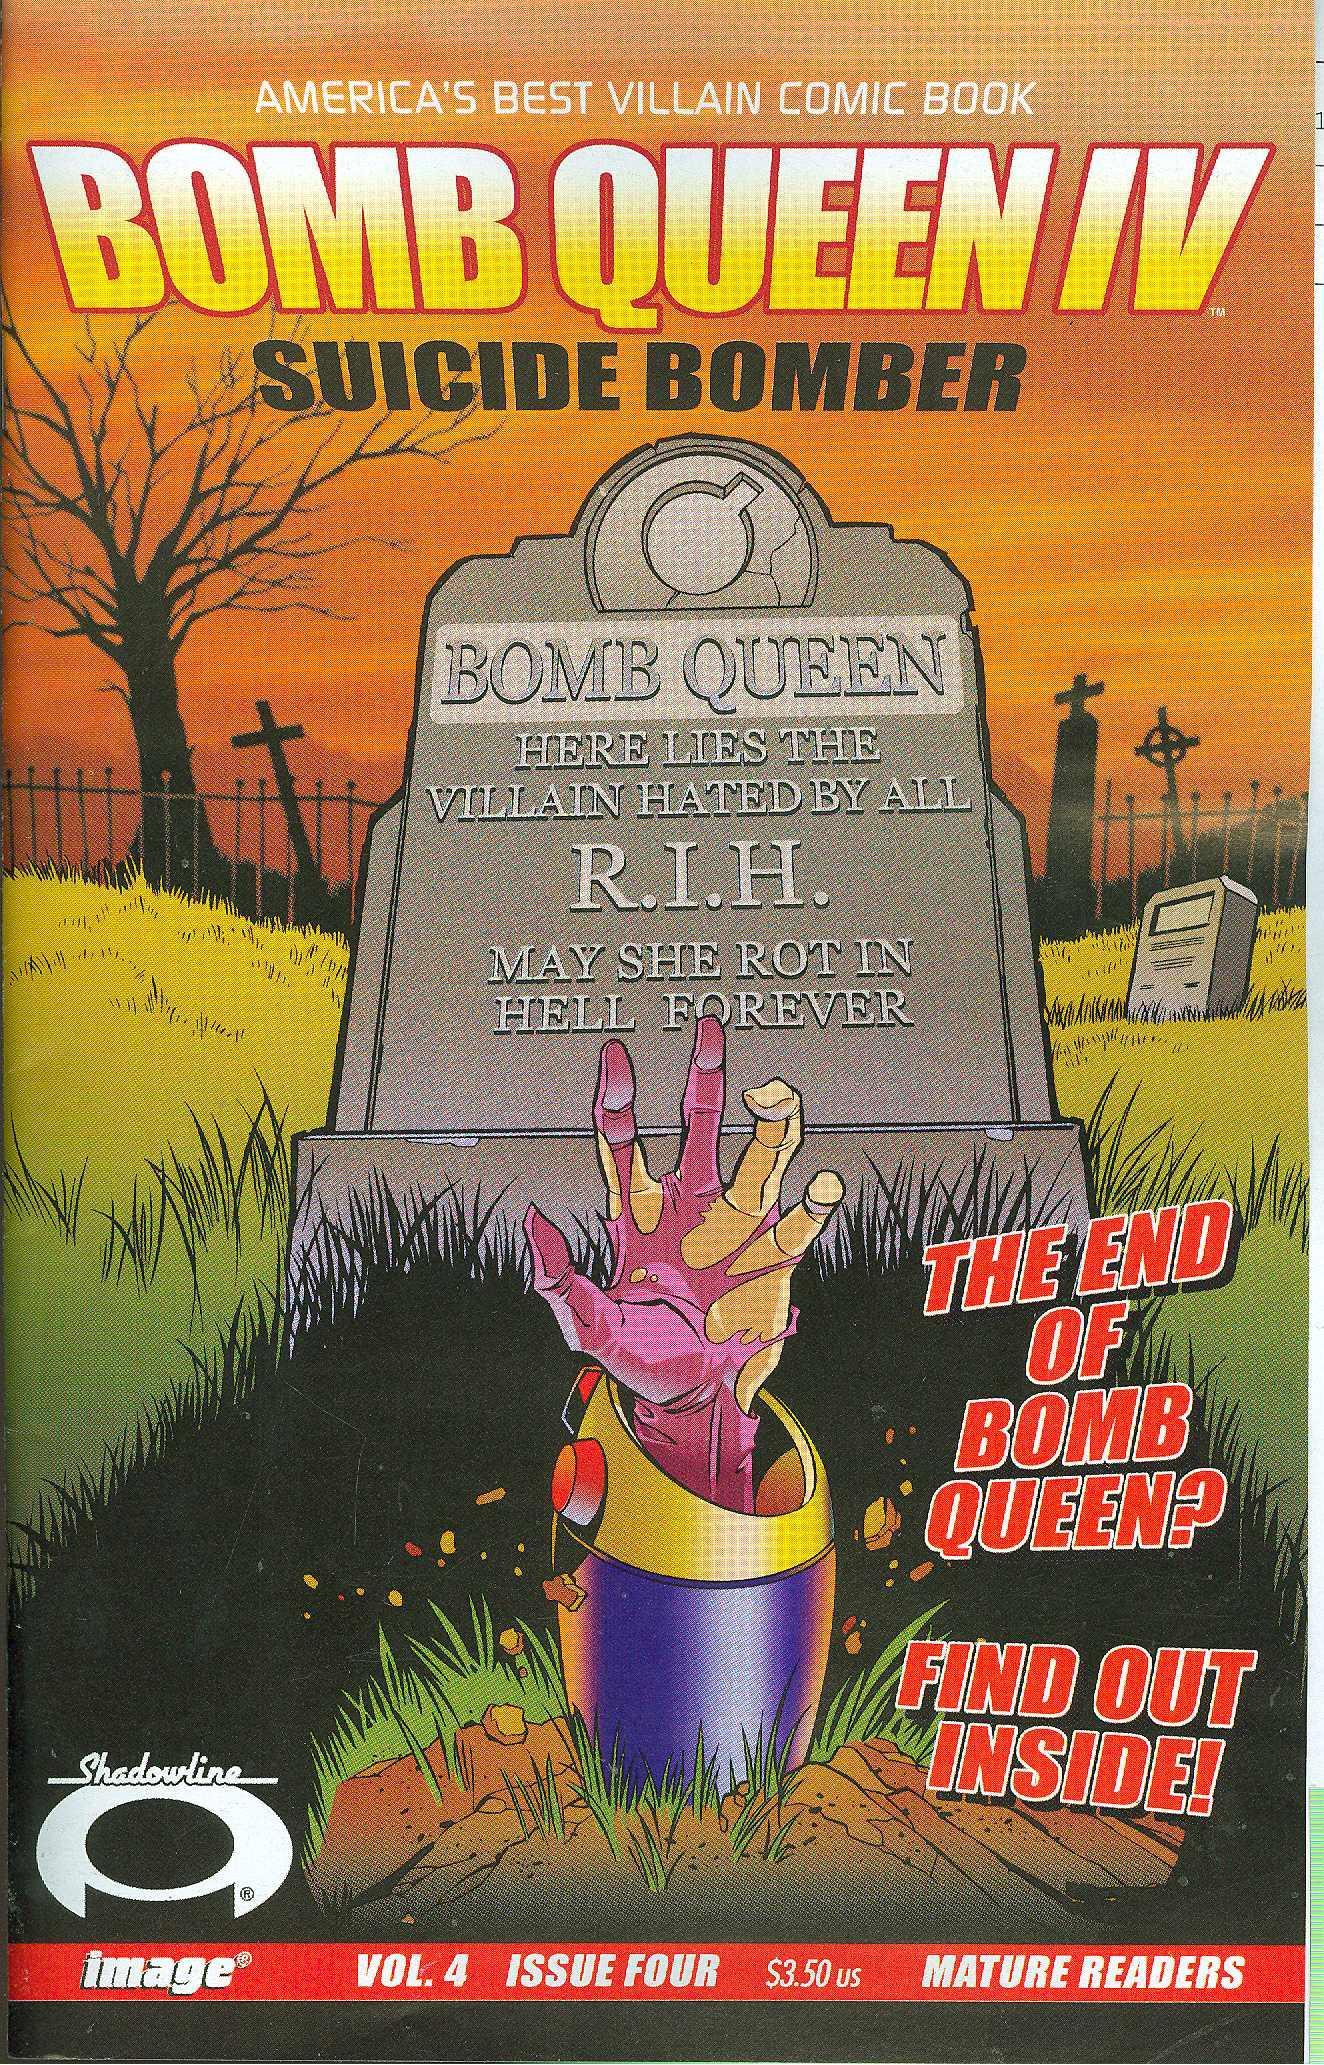 BOMB QUEEN IV #4 - Kings Comics